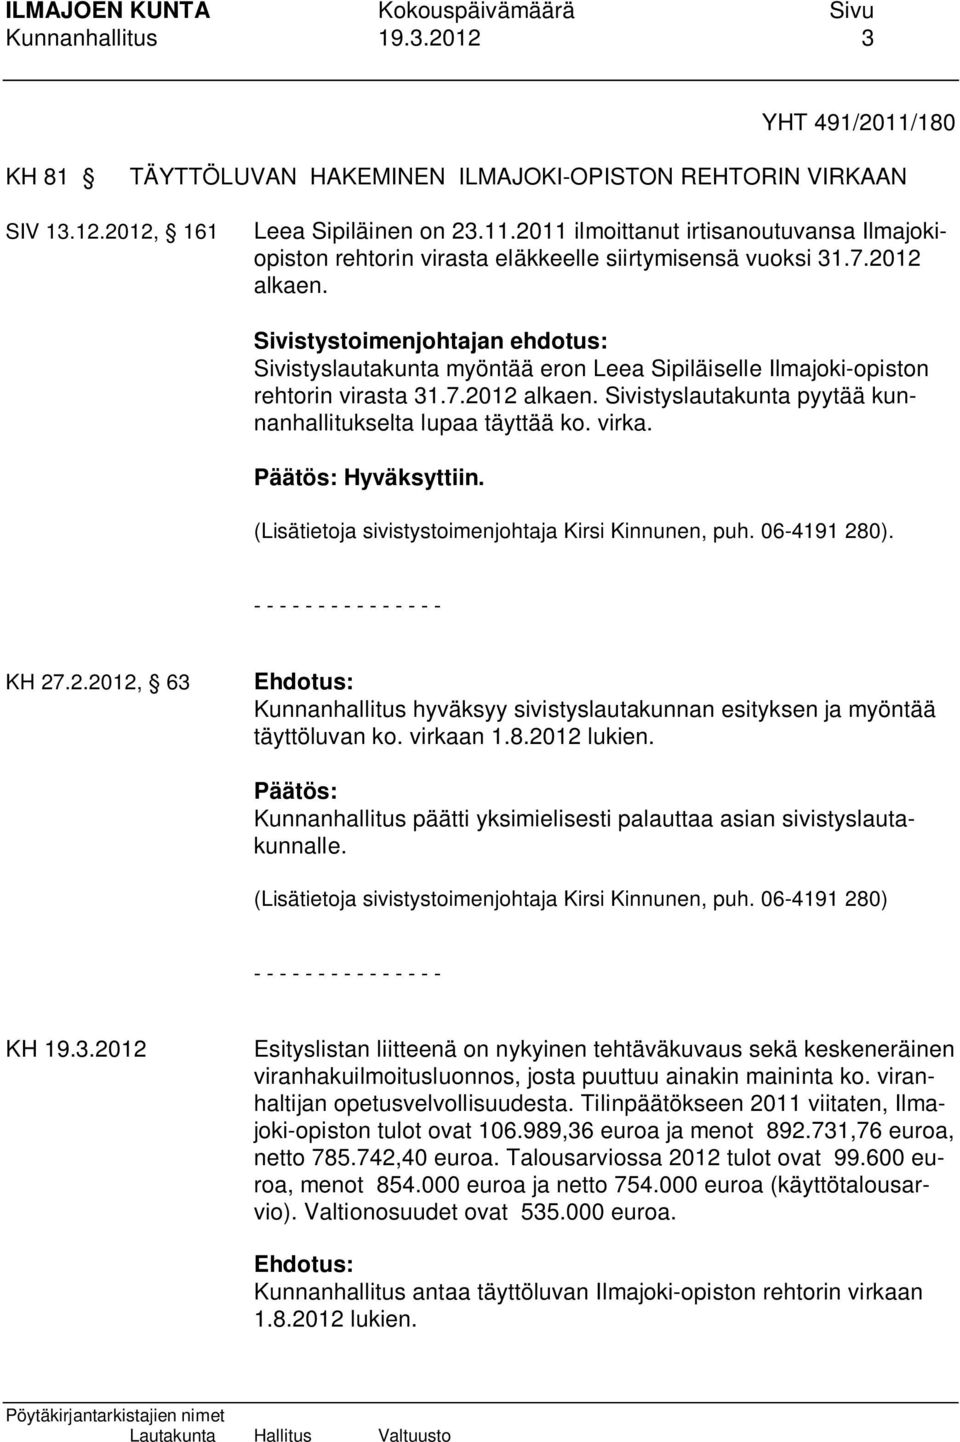 virka. Hyväksyttiin. (Lisätietoja sivistystoimenjohtaja Kirsi Kinnunen, puh. 06-4191 280). - - - - - - - - - - - - - - - KH 27.2.2012, 63 Kunnanhallitus hyväksyy sivistyslautakunnan esityksen ja myöntää täyttöluvan ko.